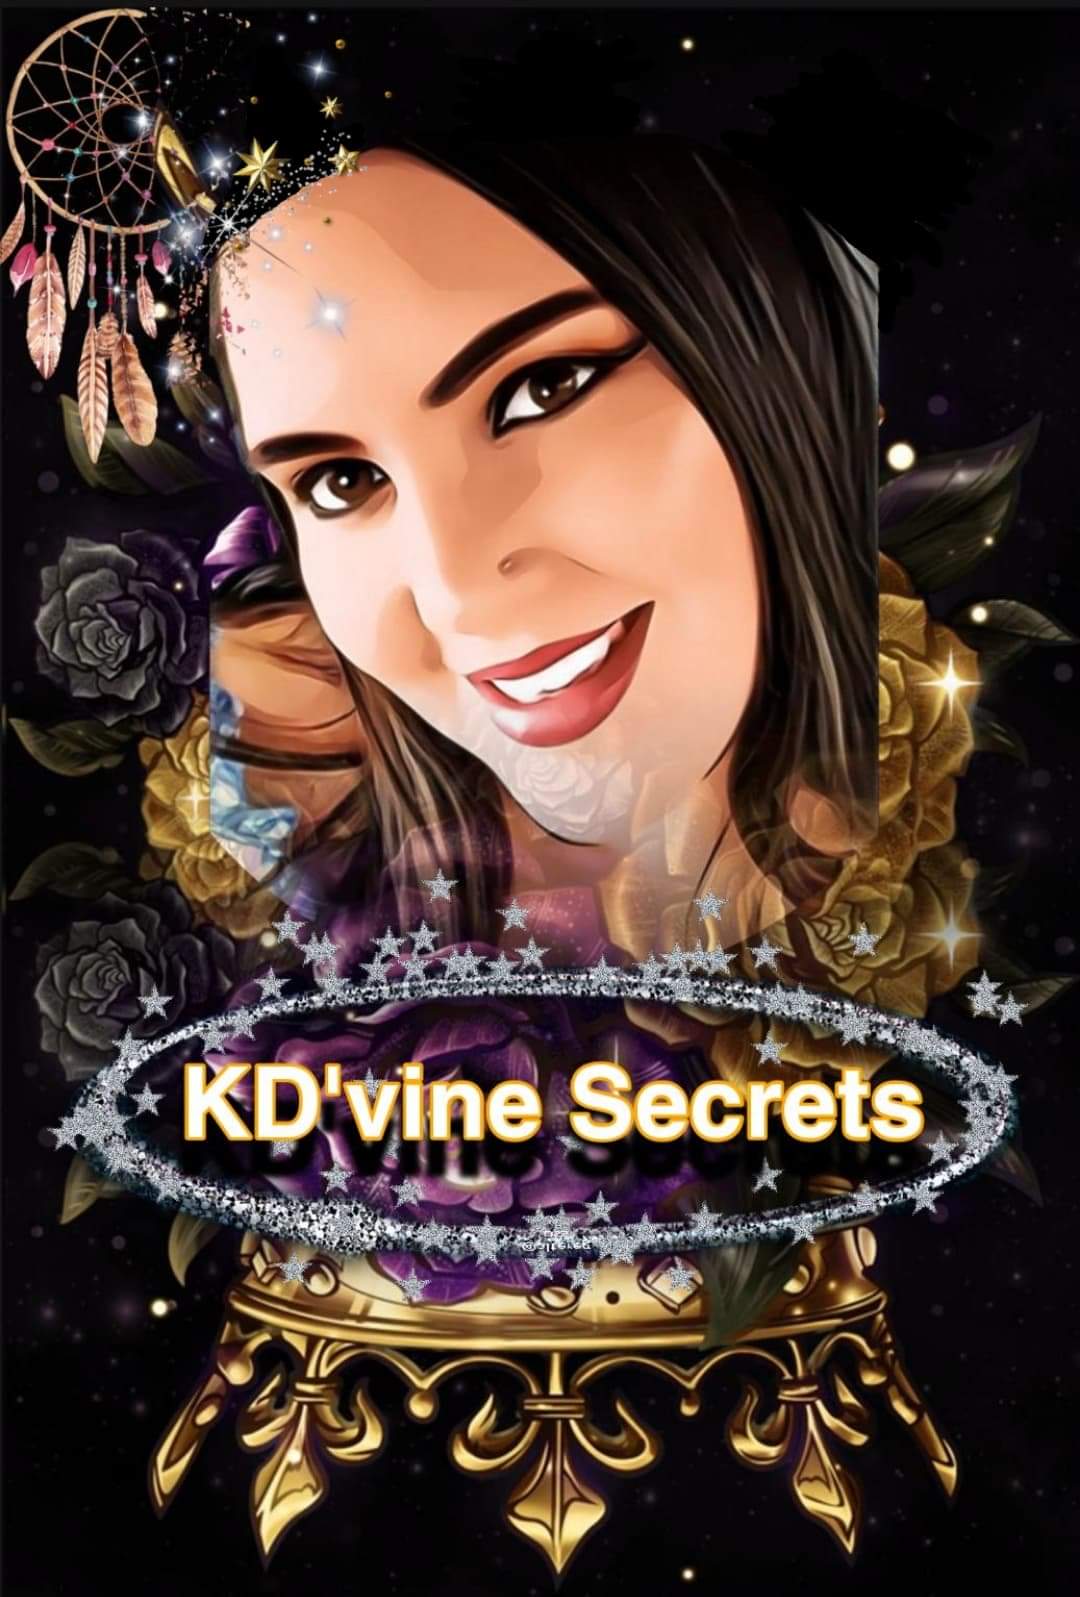 KD'vine Secrets